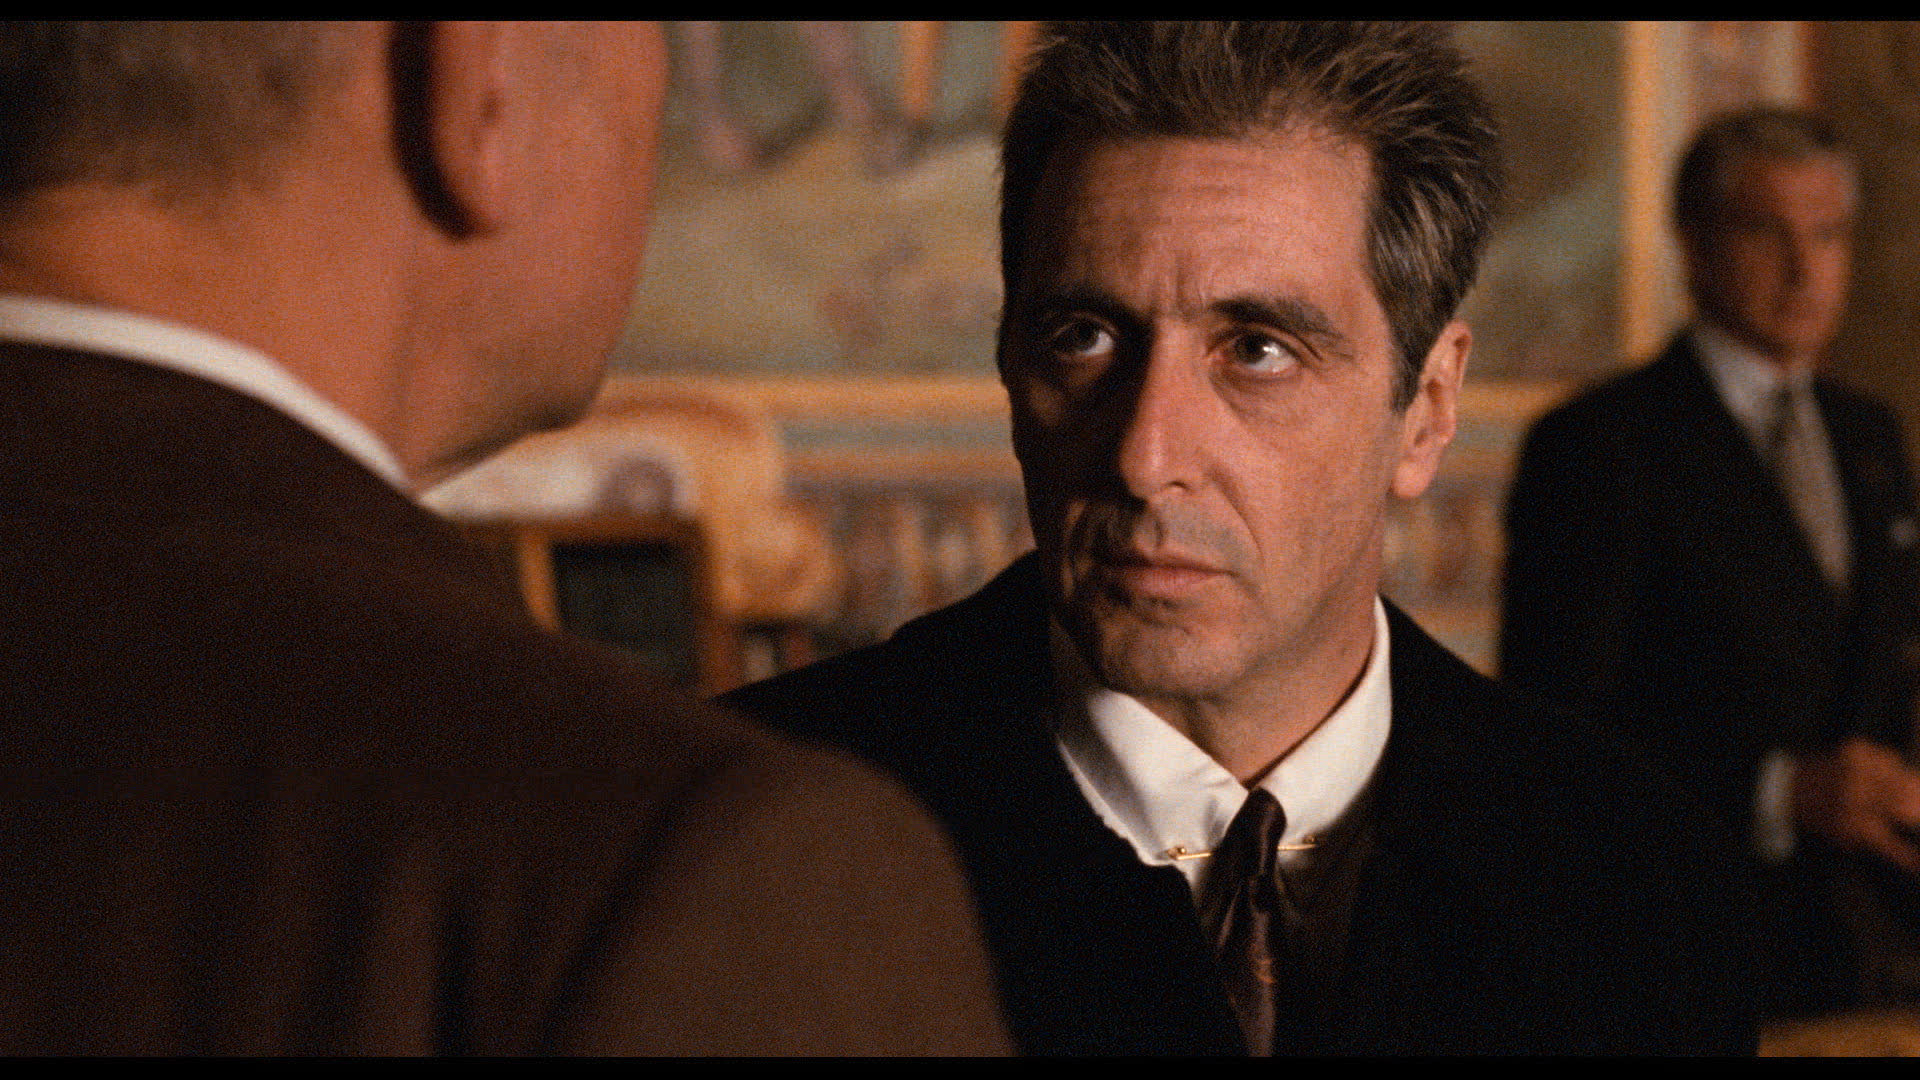 The Godfather: Part III / The Godfather: Part III (1990)